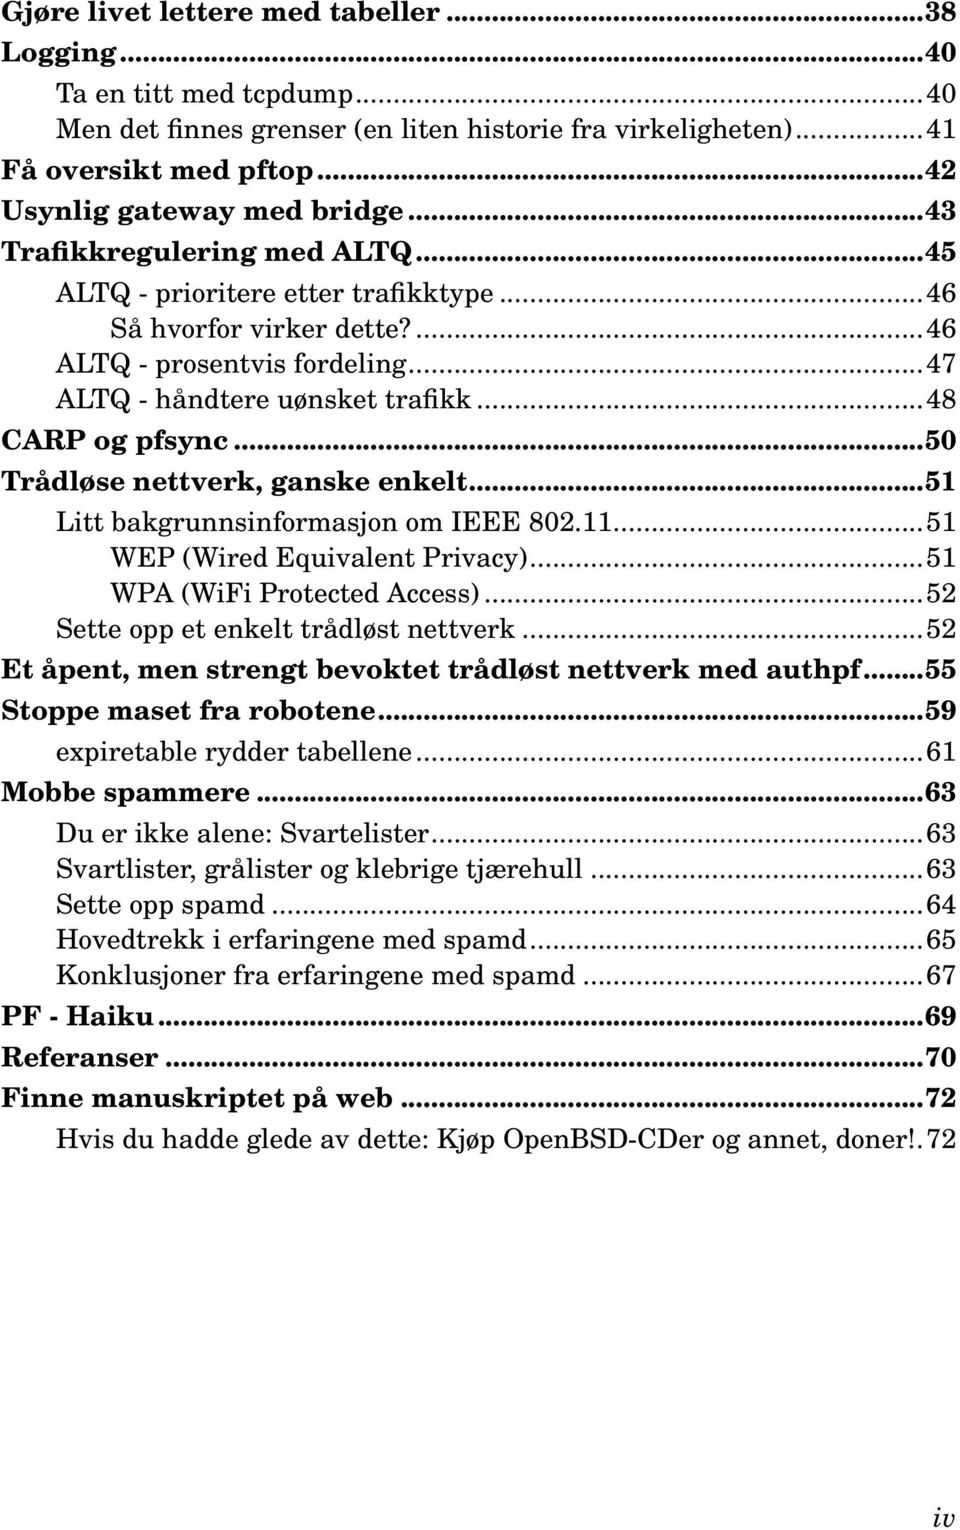 ..50 Trådløse nettverk, ganske enkelt...51 Litt bakgrunnsinformasjon om IEEE 802.11...51 WEP (Wired Equivalent Privacy)...51 WPA (WiFi Protected Access)...52 Sette opp et enkelt trådløst nettverk.